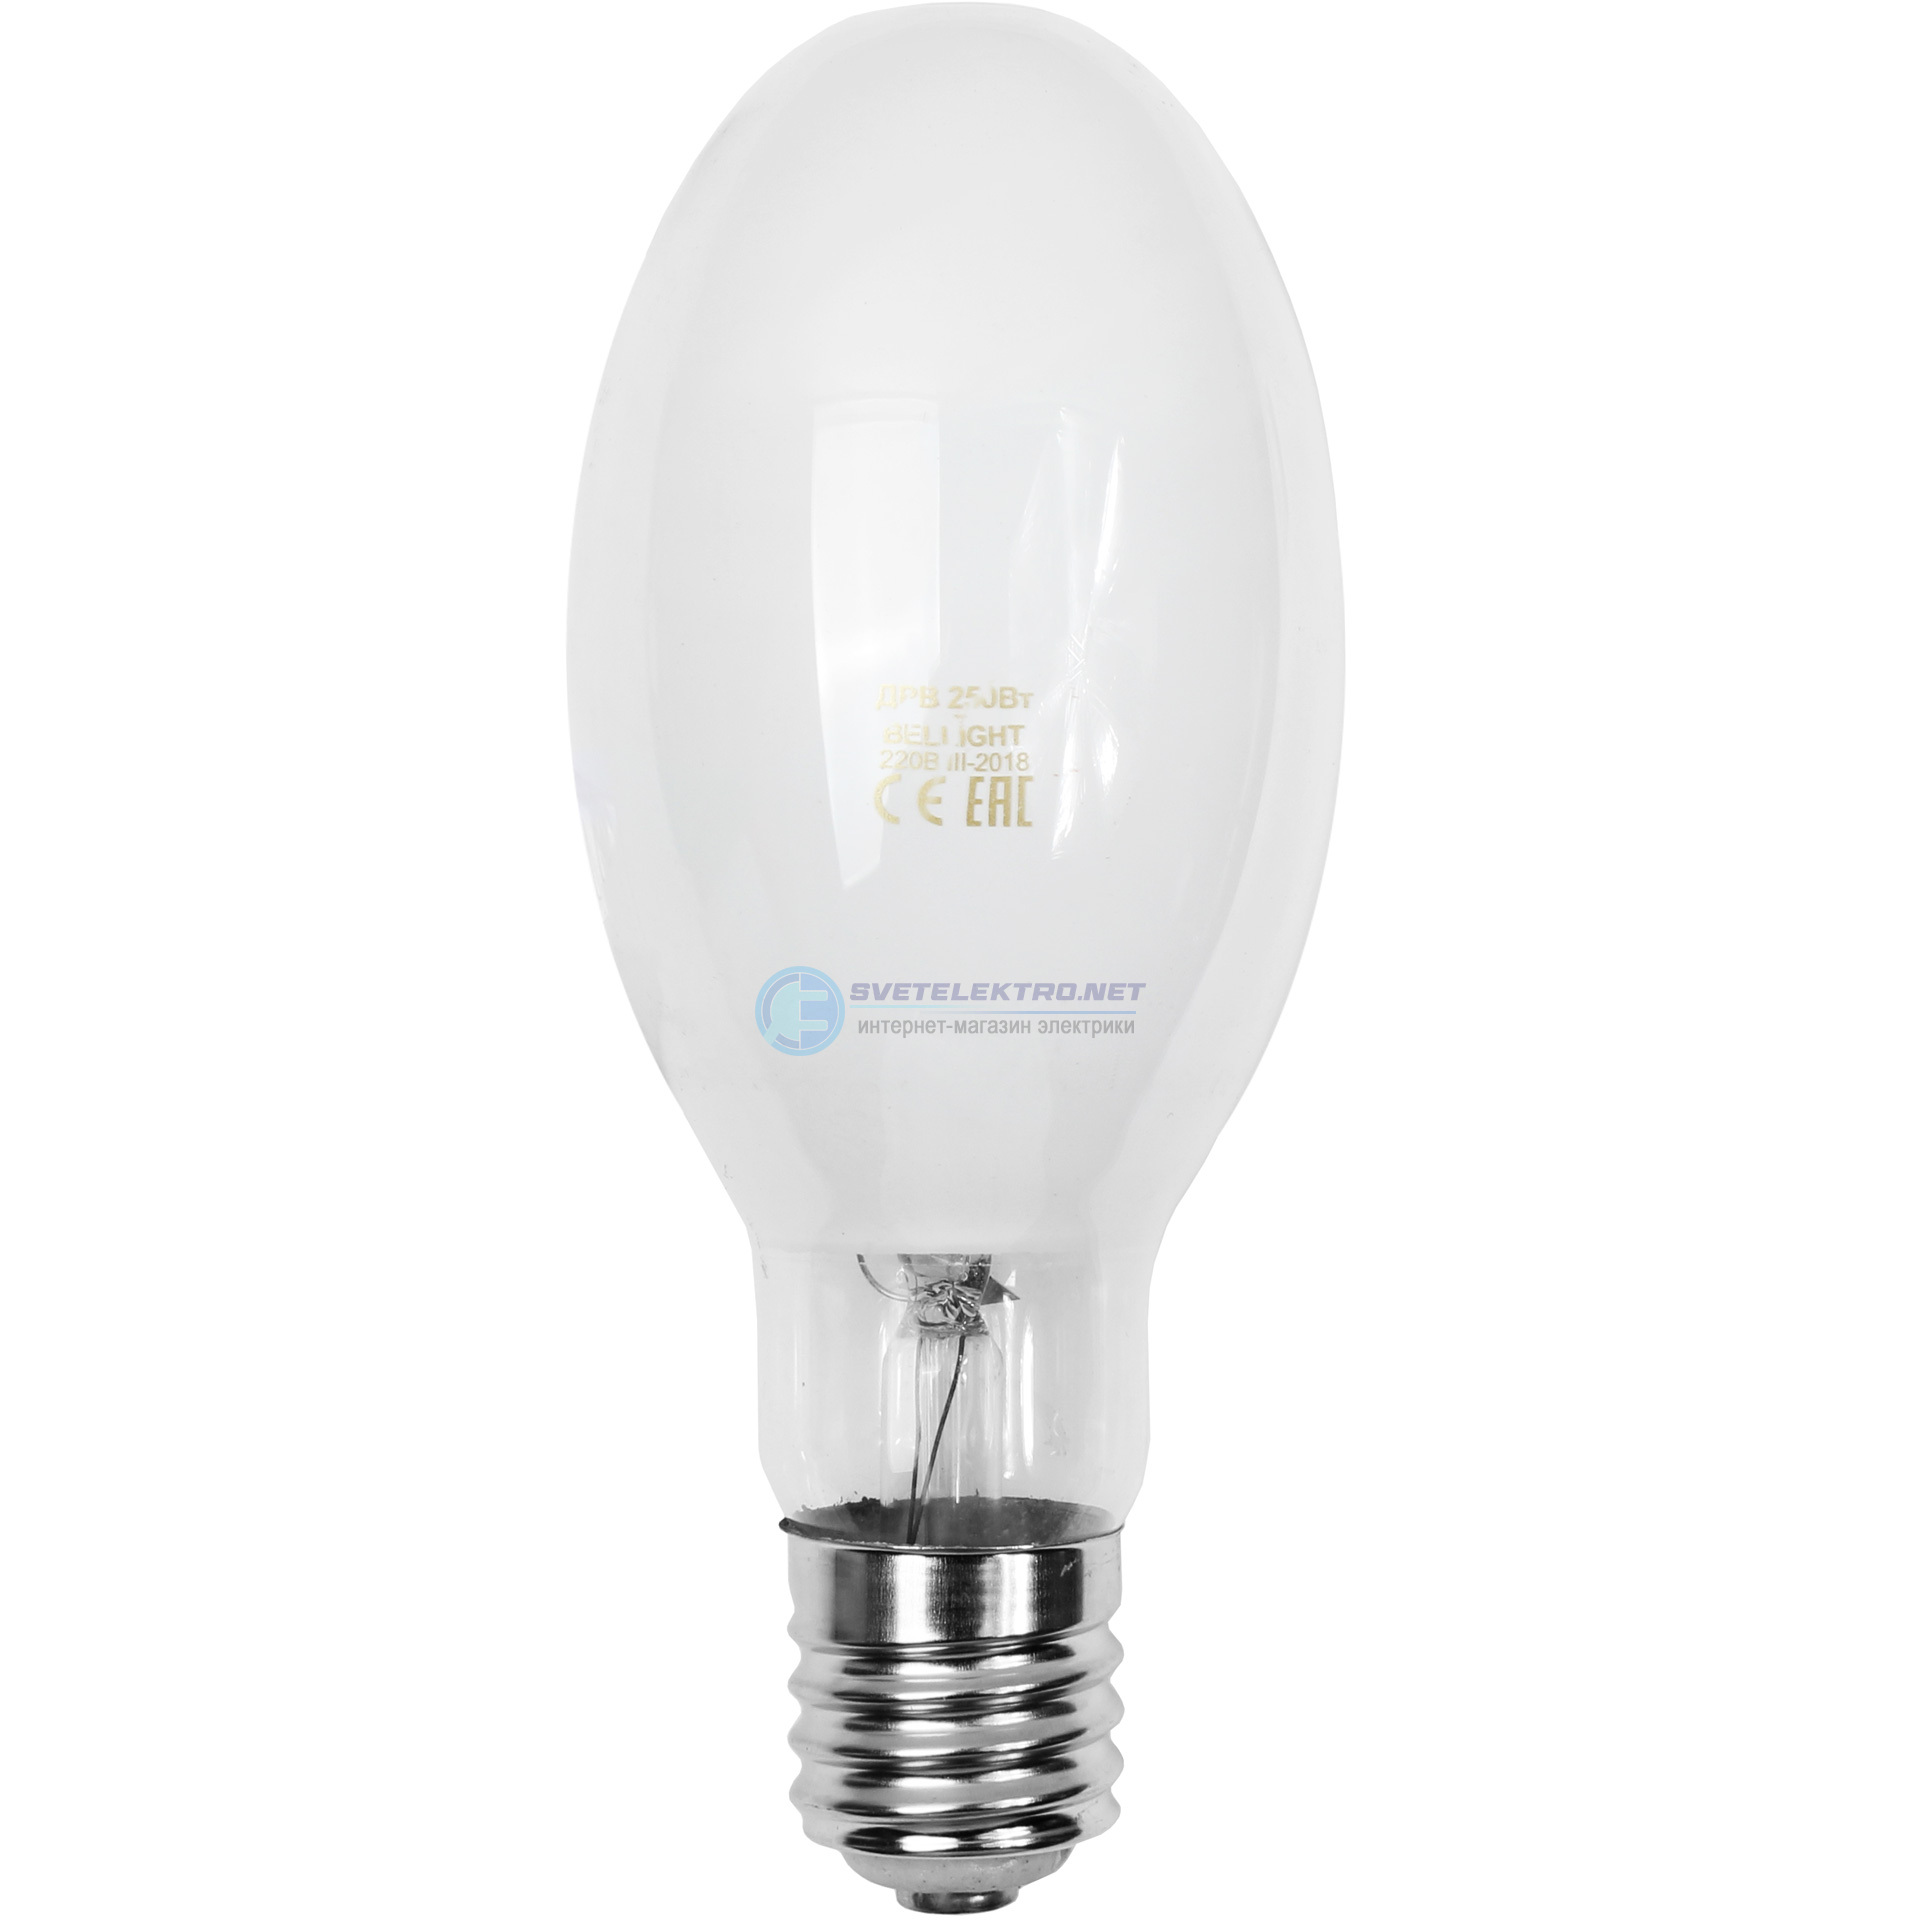 Лампа ртутная ДРЛ 250 вт Е40 14098930 BELLIGHT   оптом и .